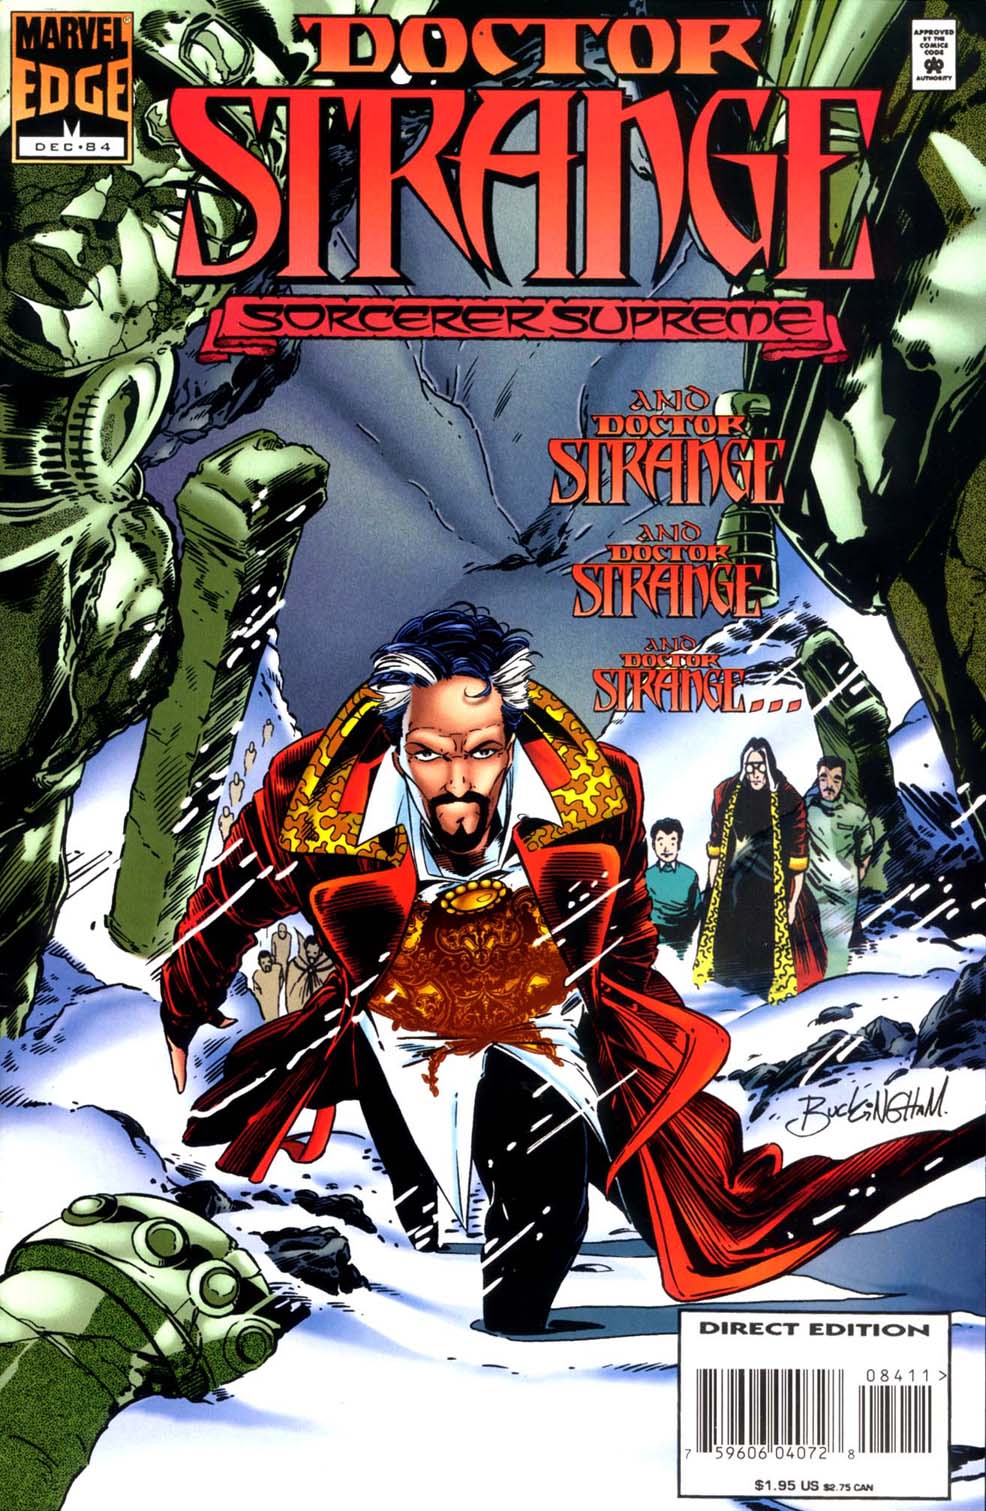 Doctor Strange: Sorcerer Supreme issue 84 - Page 1